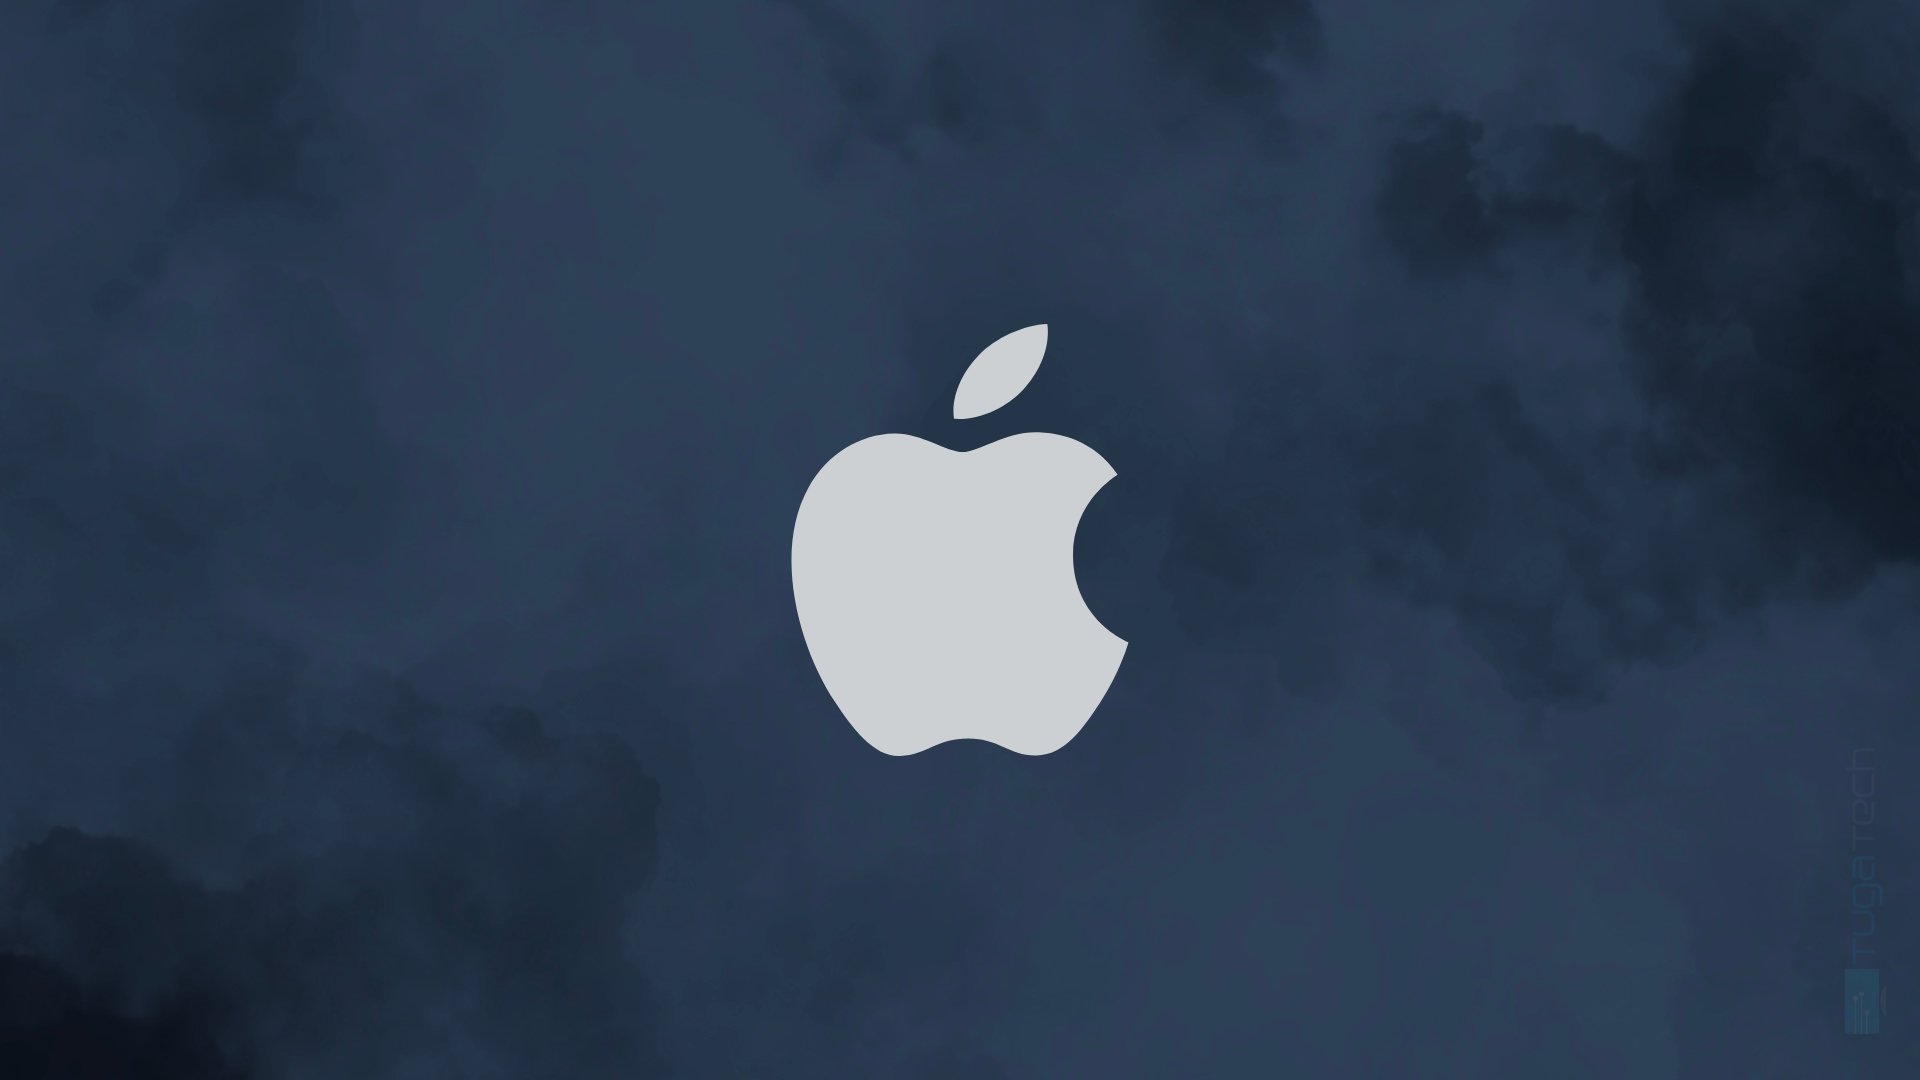 Apple confirma aquisição de empresa de IA no Canadá